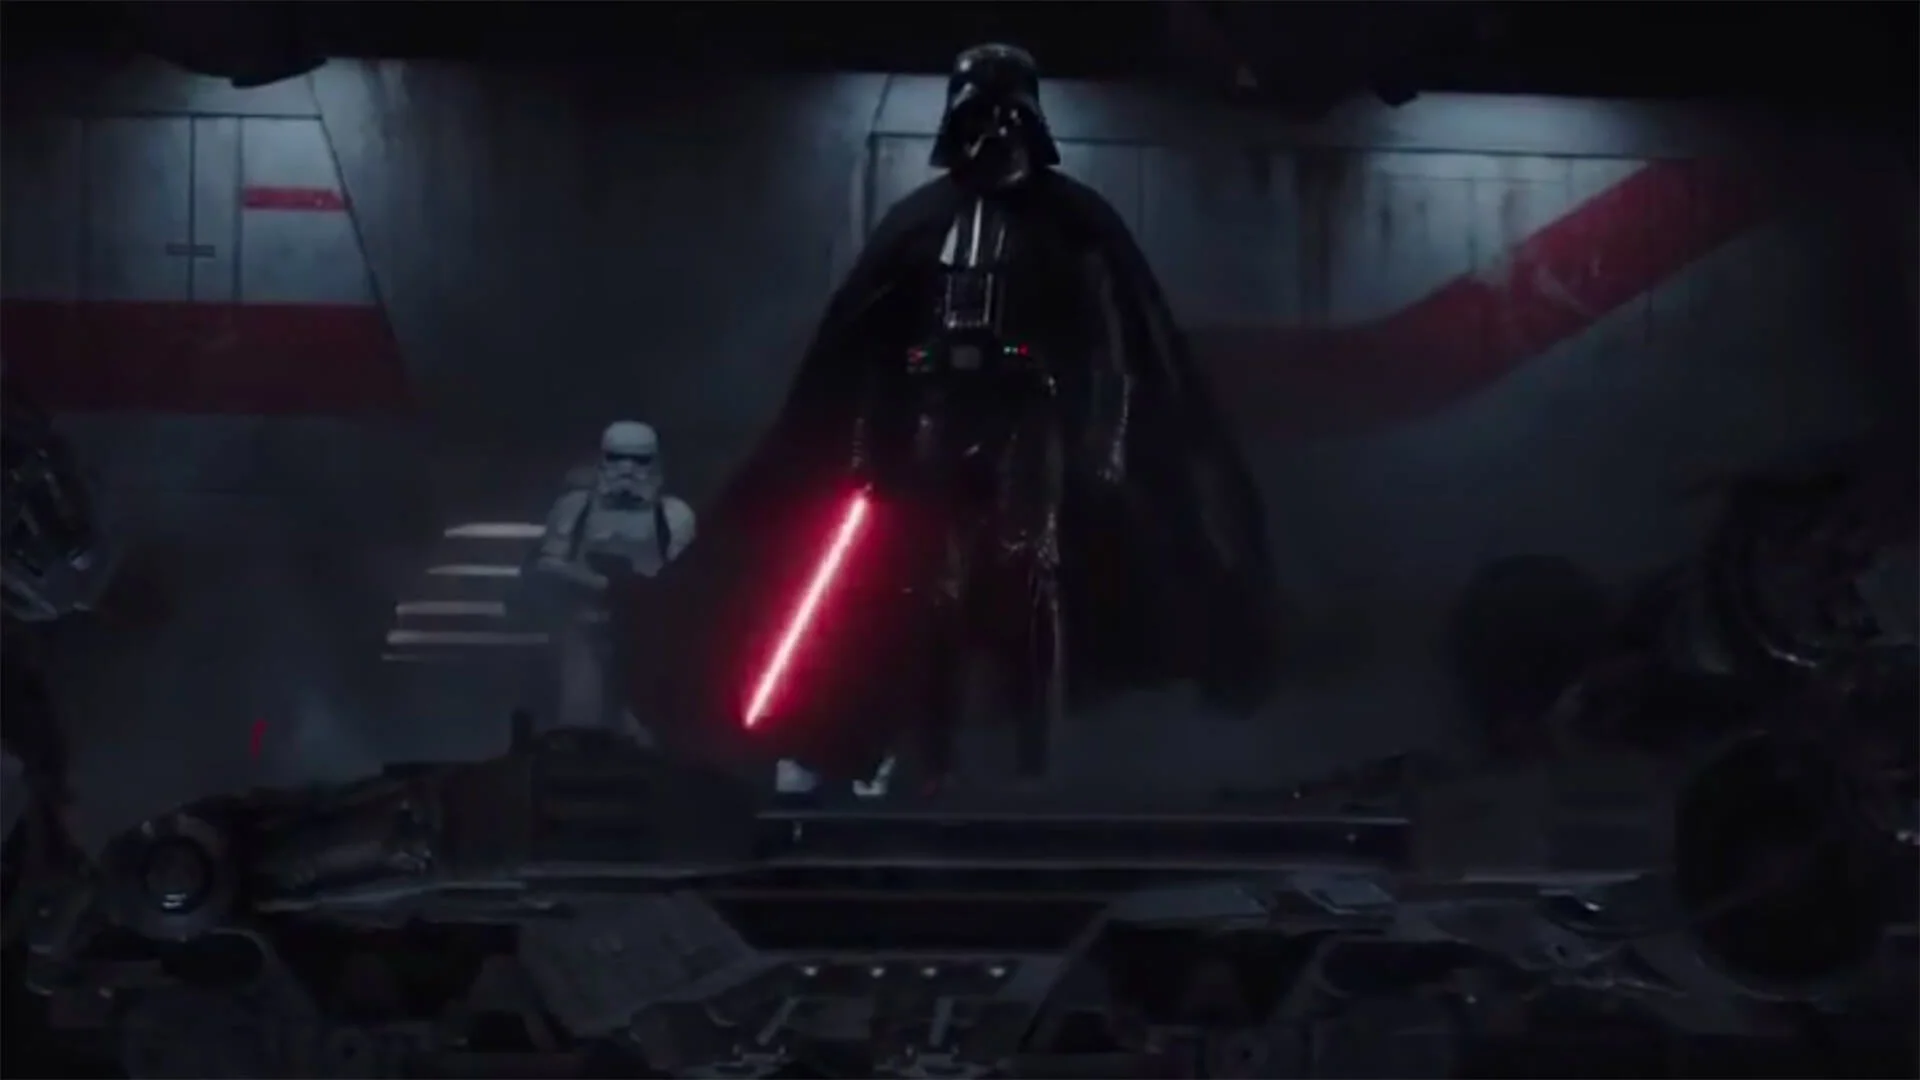 Darth Vader majdnem a tengerparton csapott össze a Lázadókkal a Zsivány Egyesben